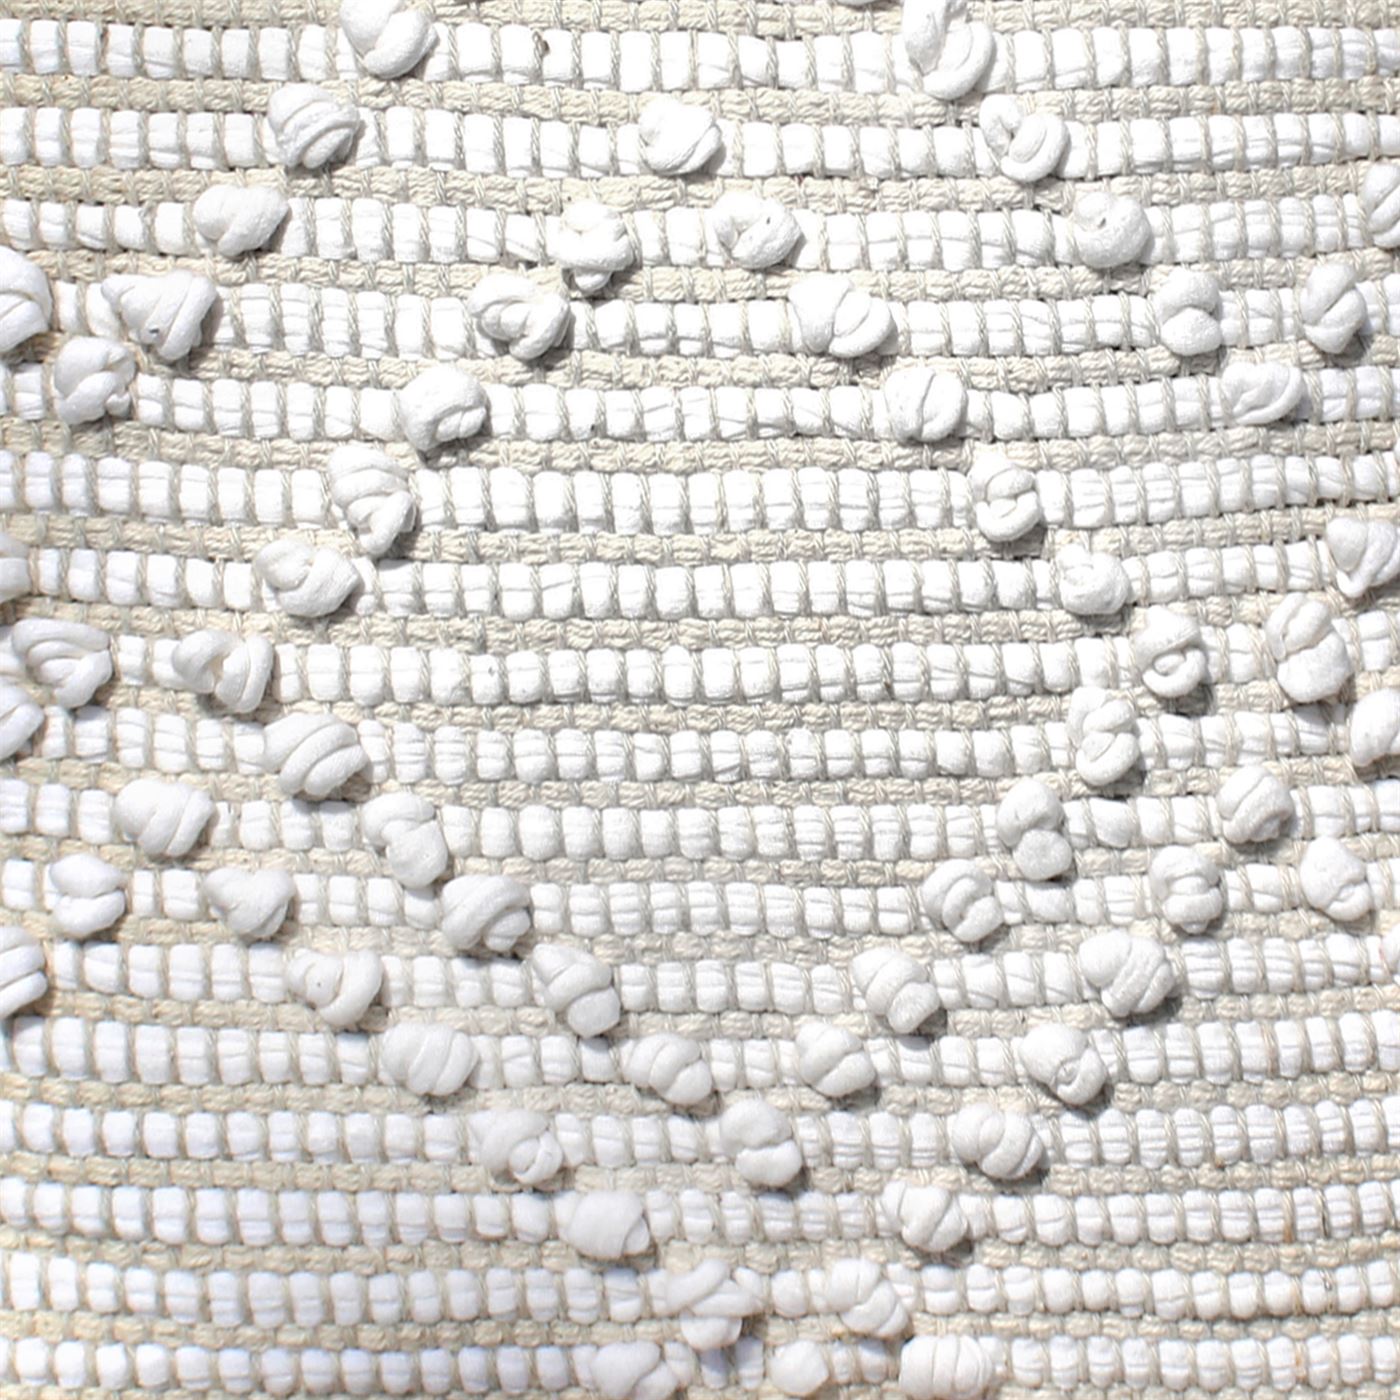 Agria Pillow, Cotton, Natural White, 